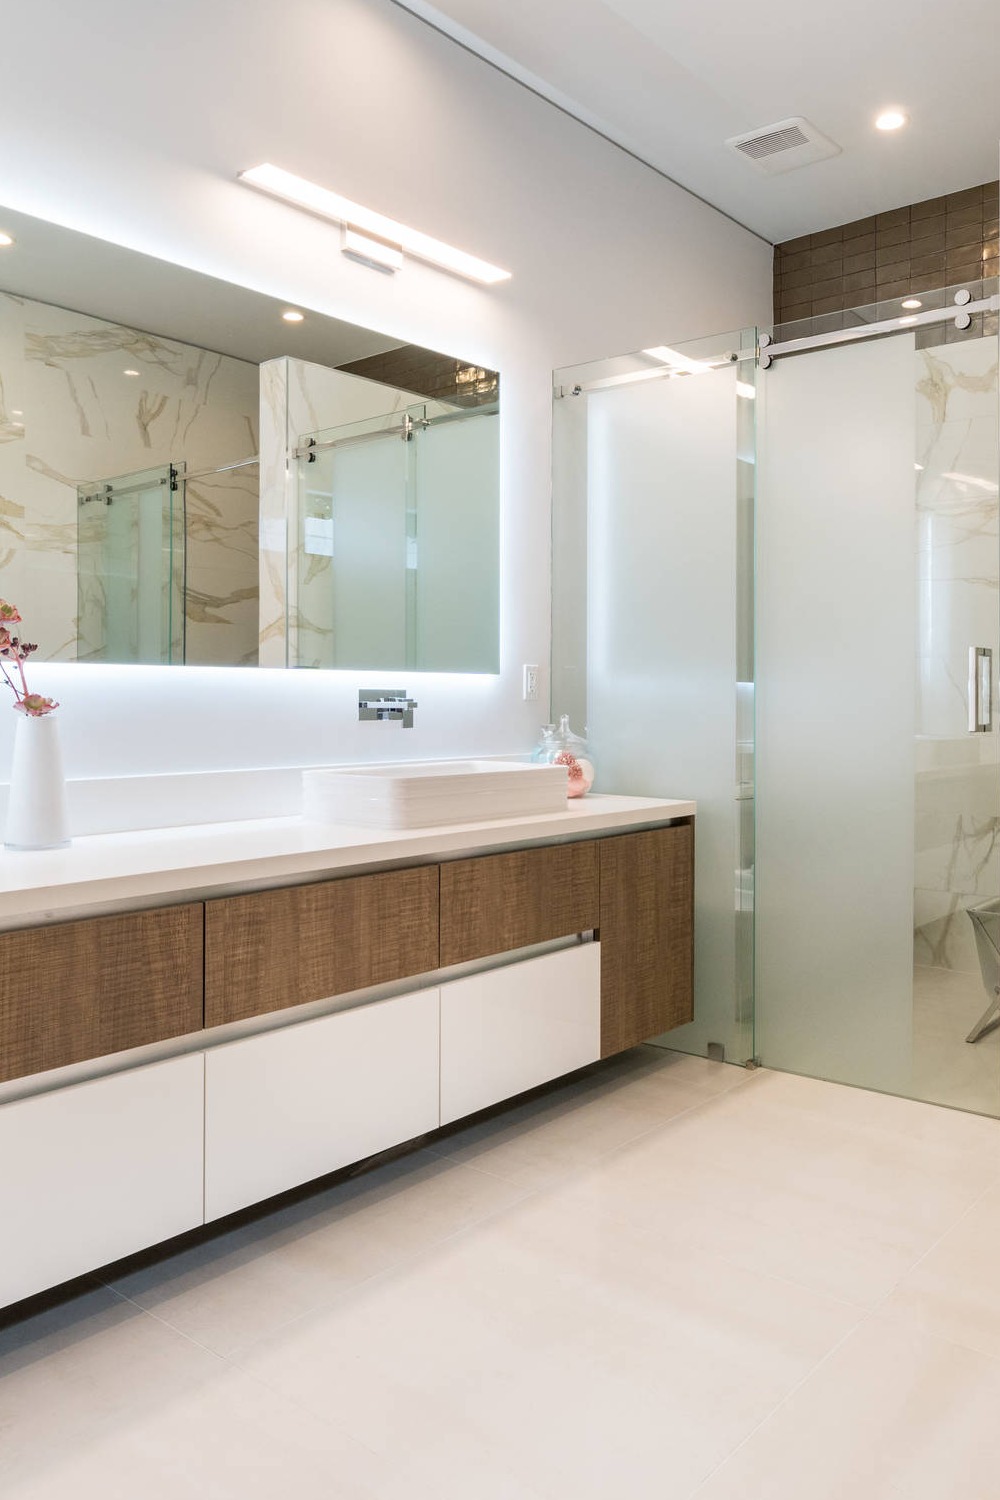 Floating Vanity Walk In Shower Bathroom Vessel Sink White Walls Tile Flooring